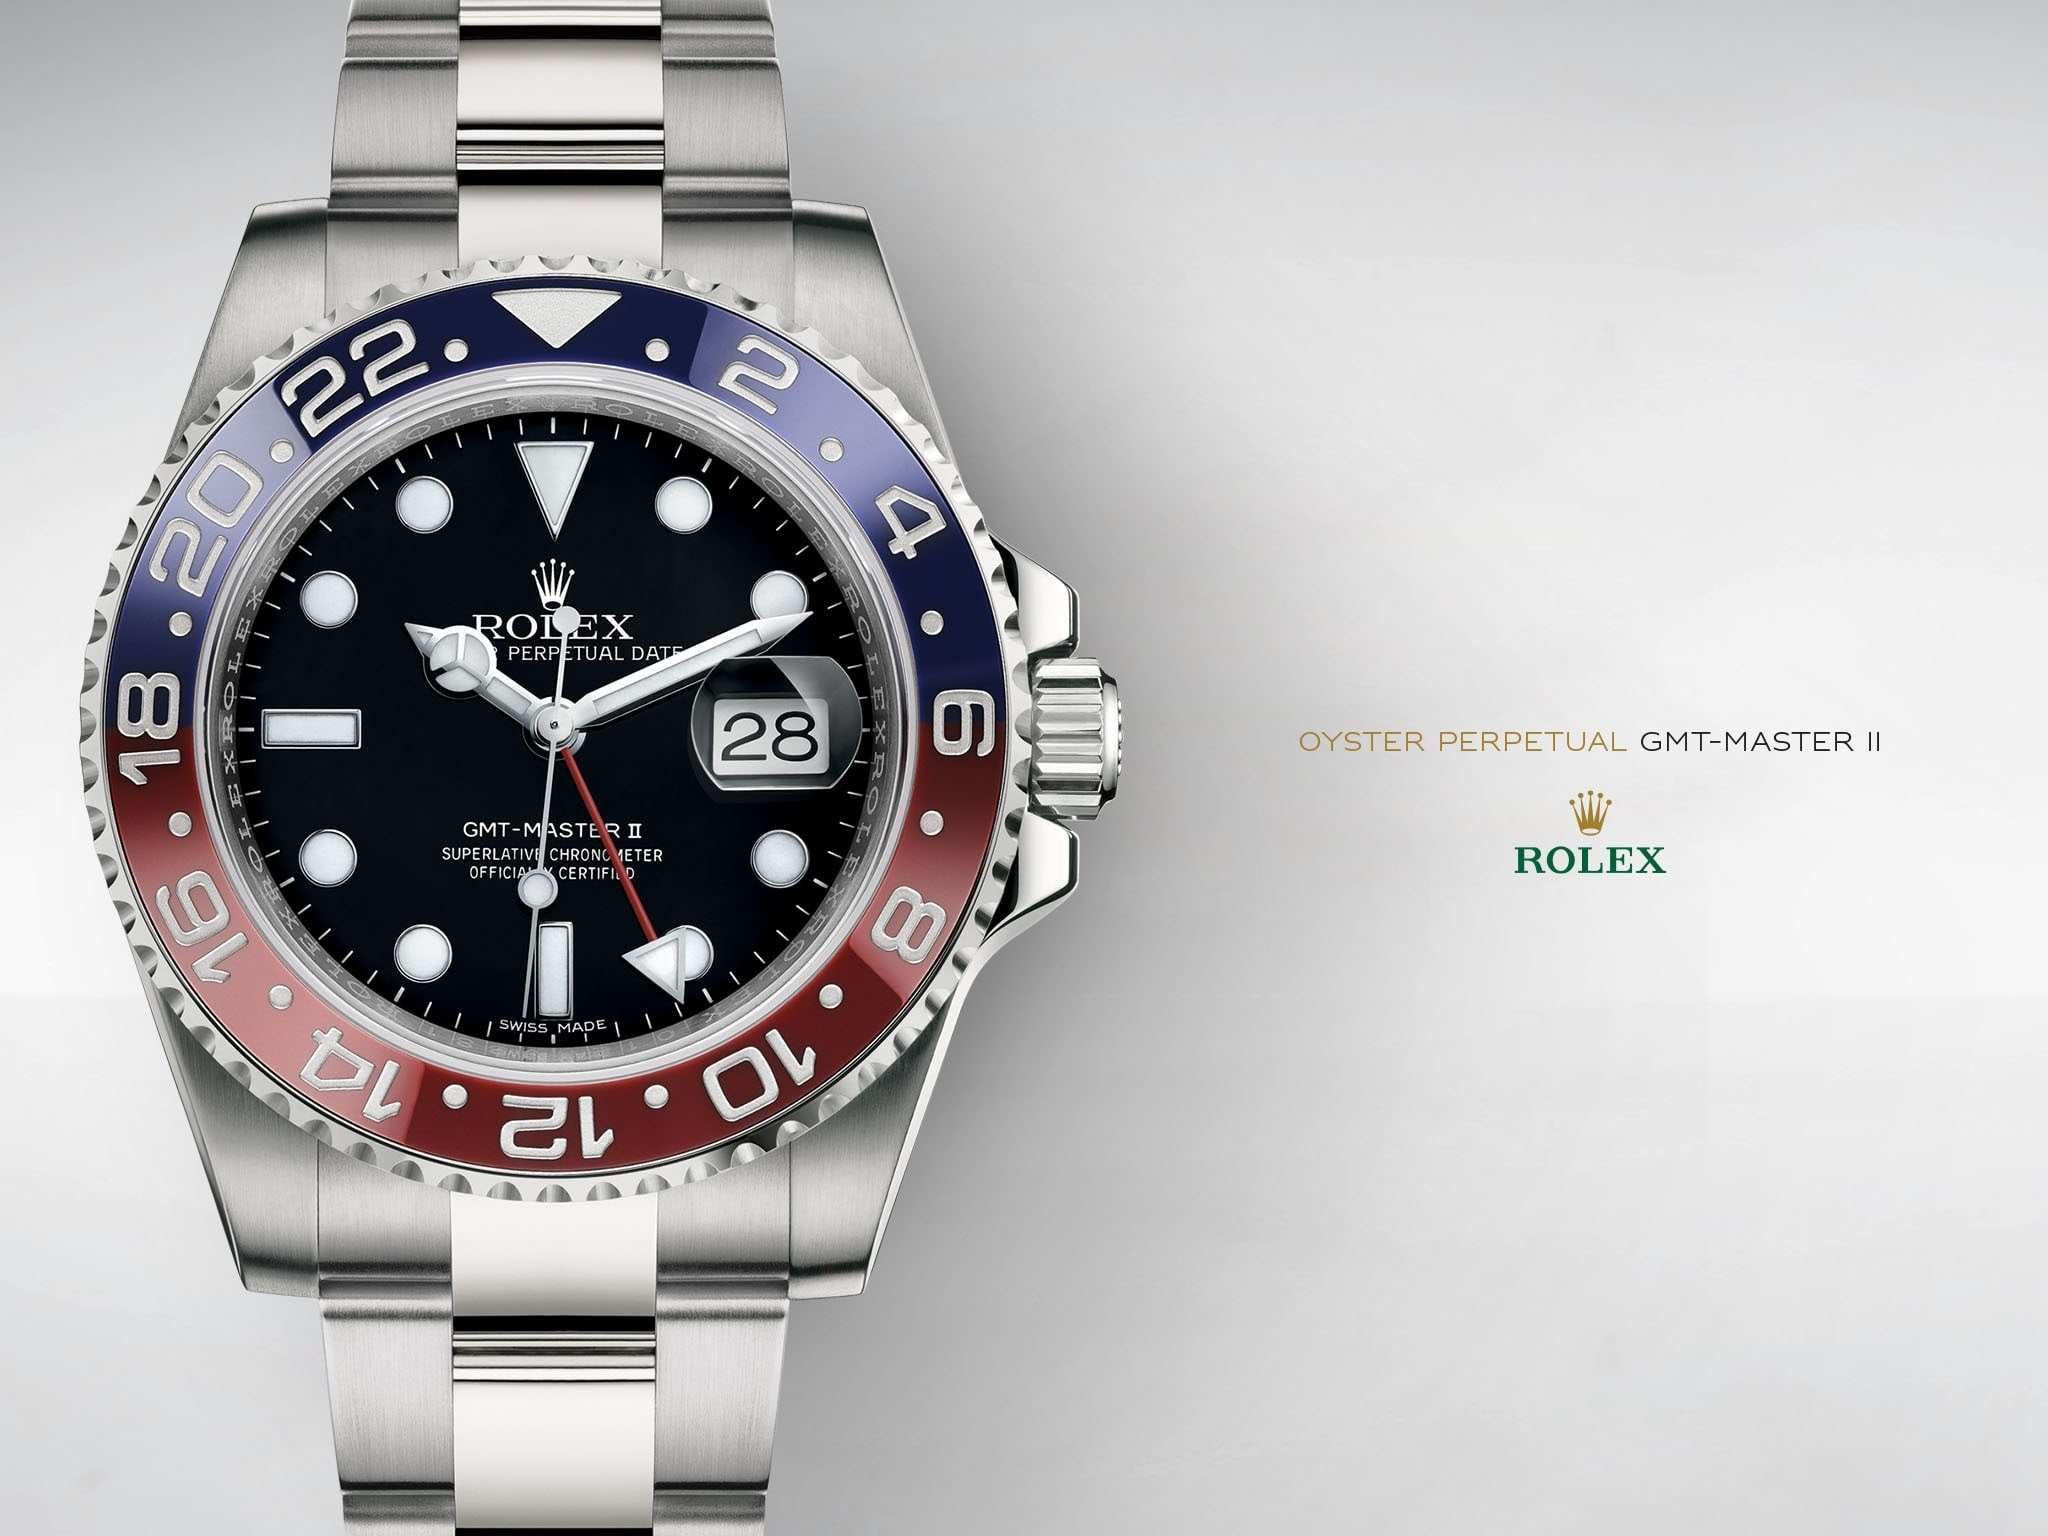 Download Rolex Watch Live Wallpaper The Best Hd Wallpaper - Rolex Gmt ...